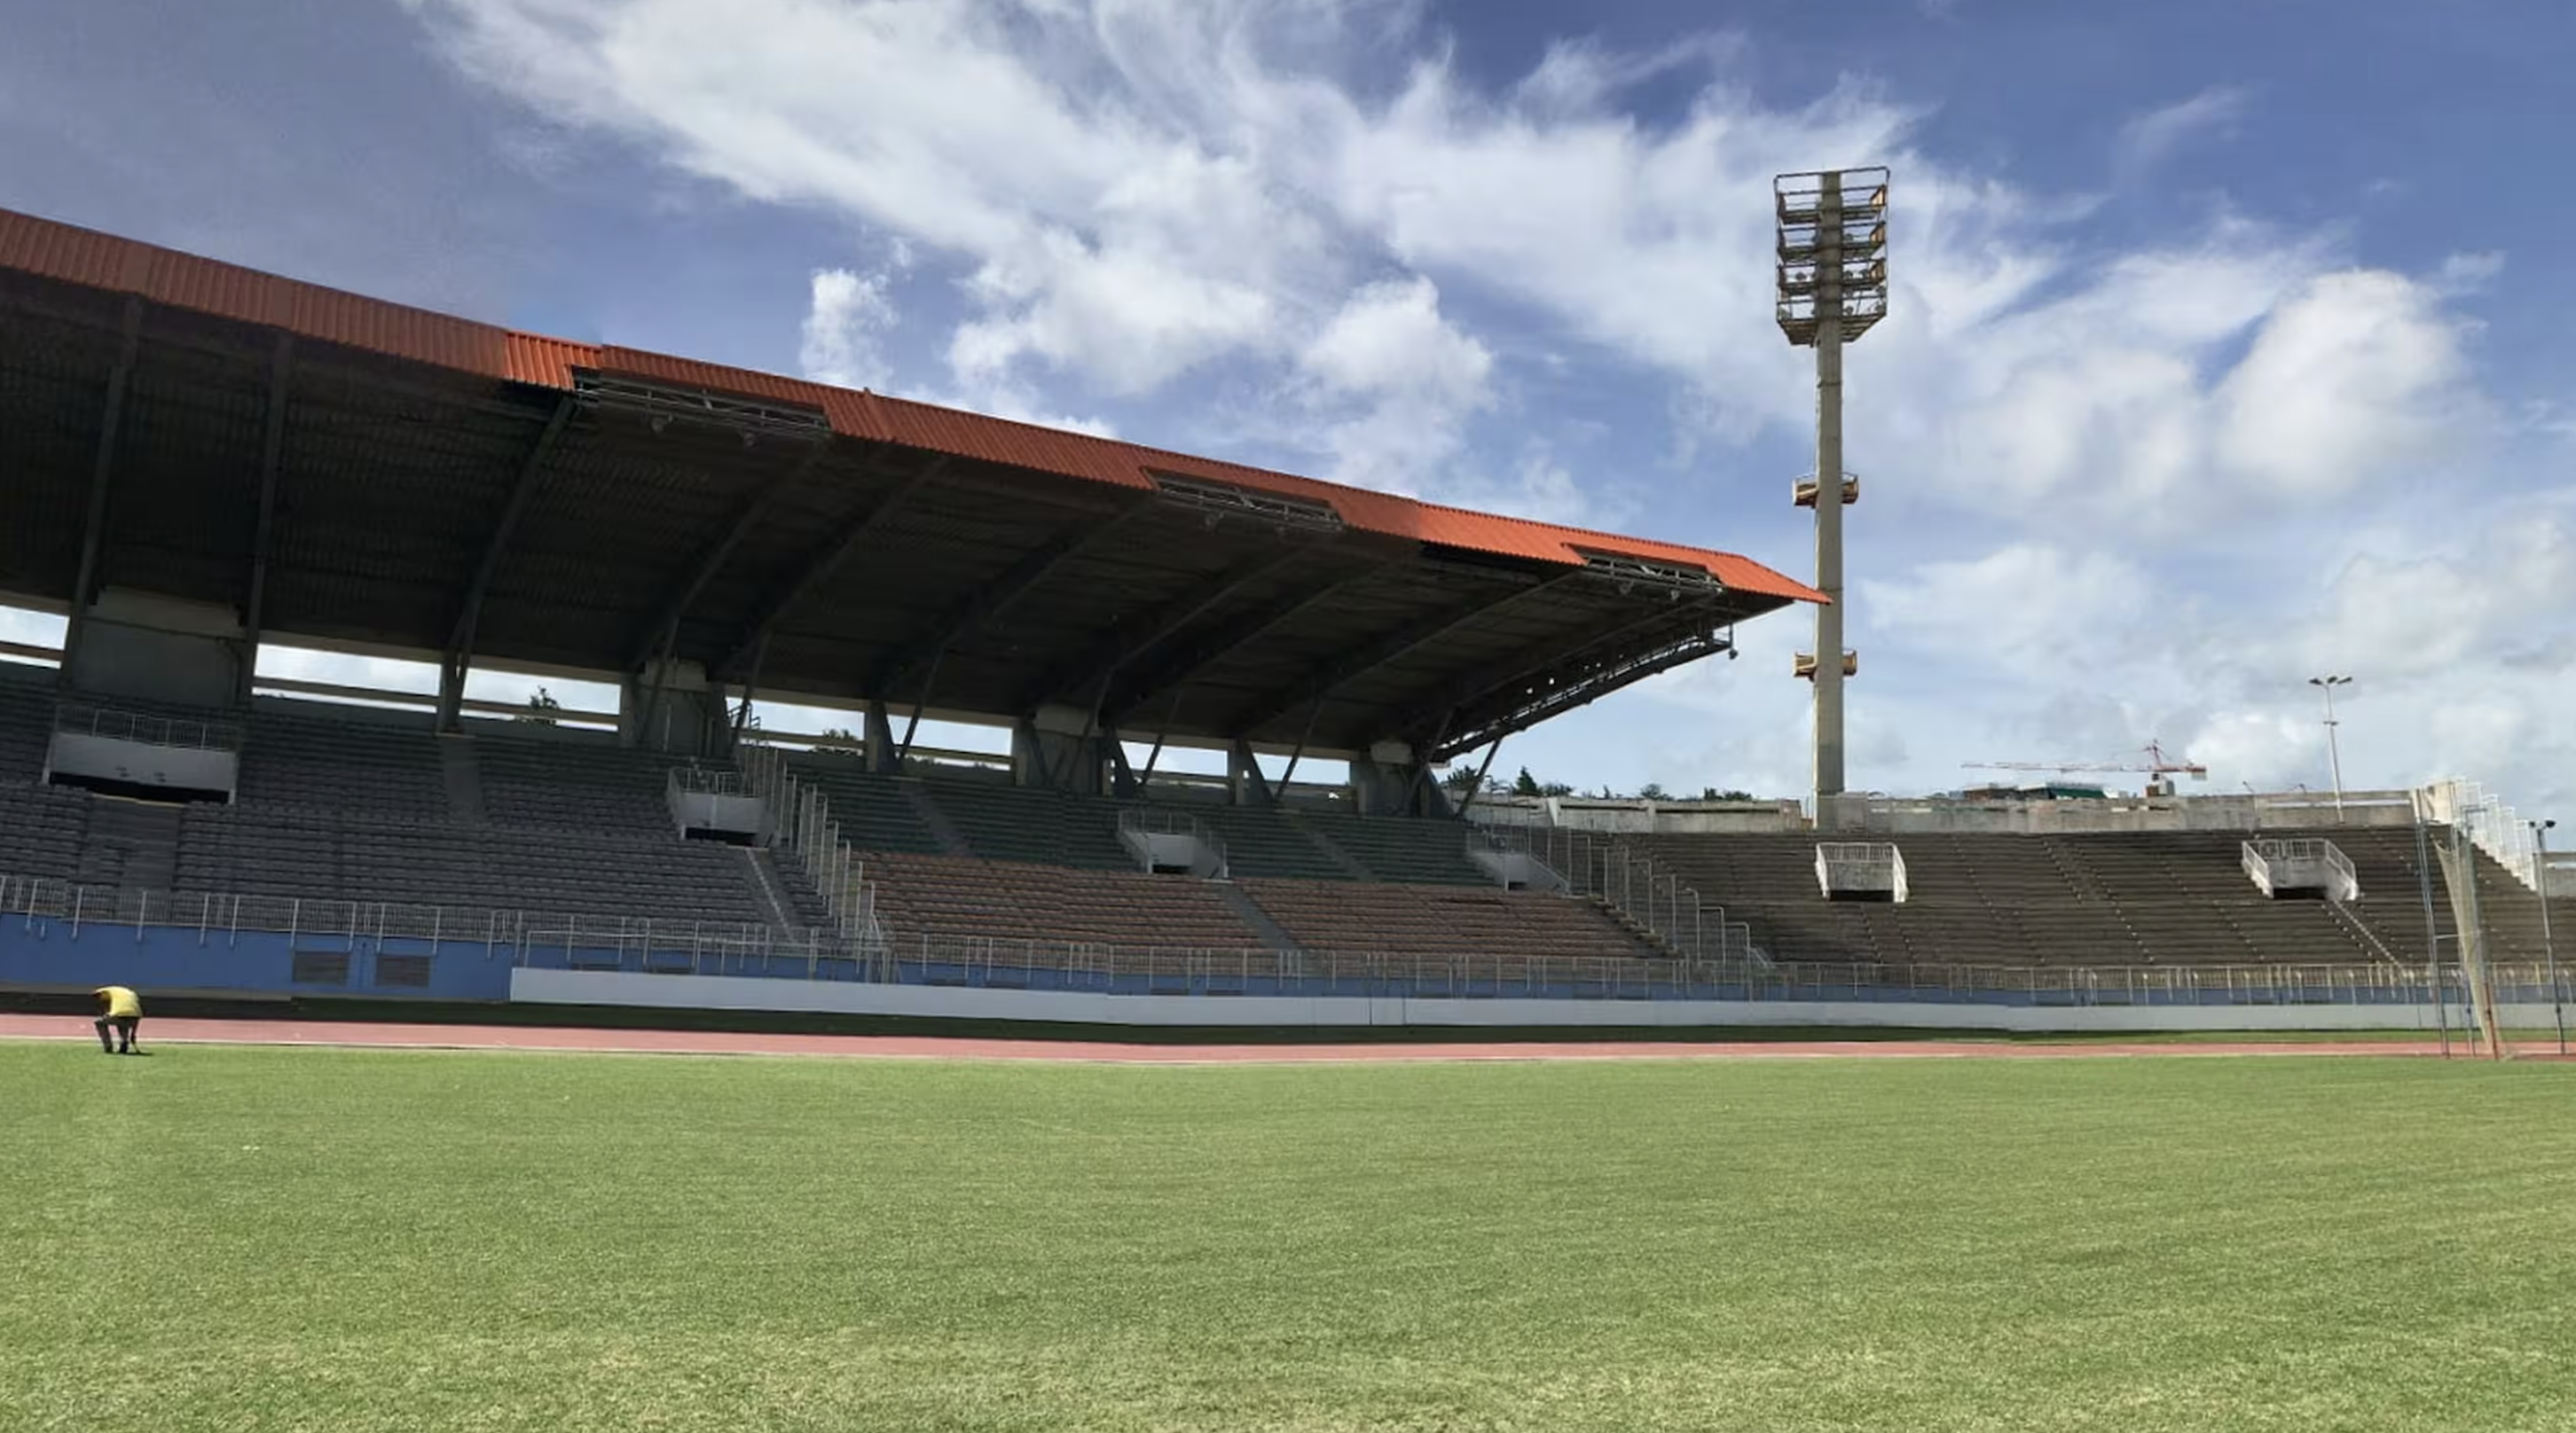     Le stade Pierre Aliker indisponible, le tournoi des clubs de football foyalais annulé

